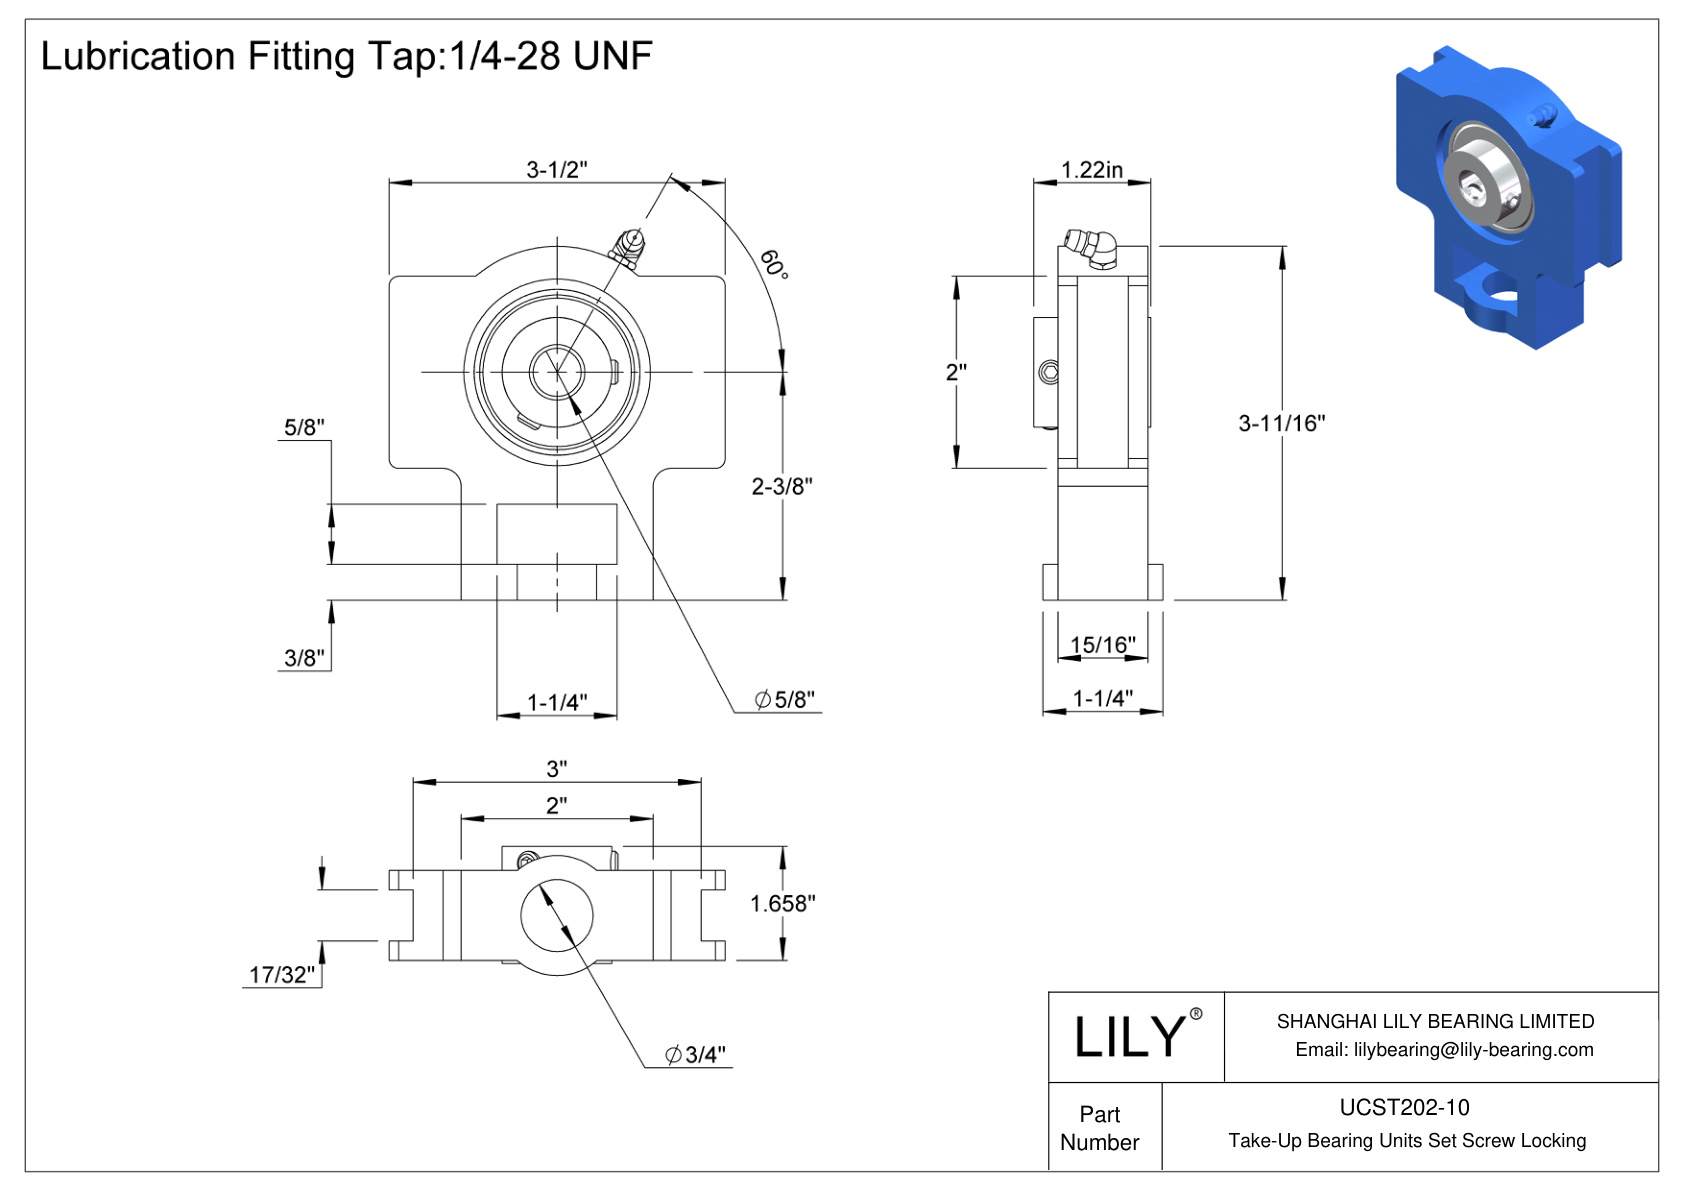 UCST202-10 Take-Up Bearing Units Set Screw Locking cad drawing